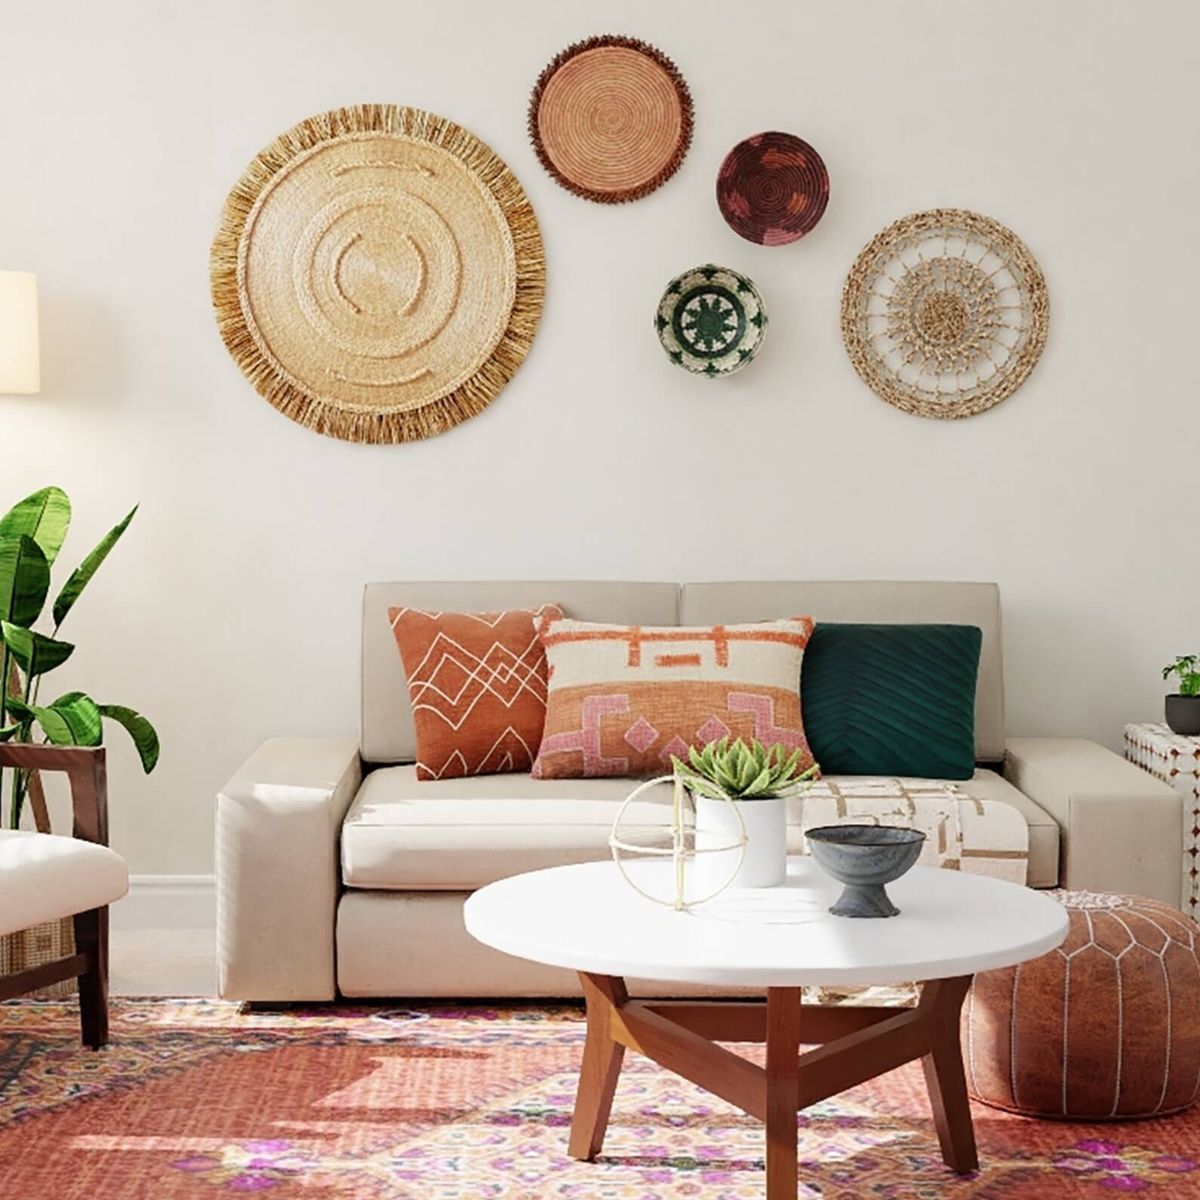 Miras estas 15 ideas fáciles de hacer para decorar tu hogar con